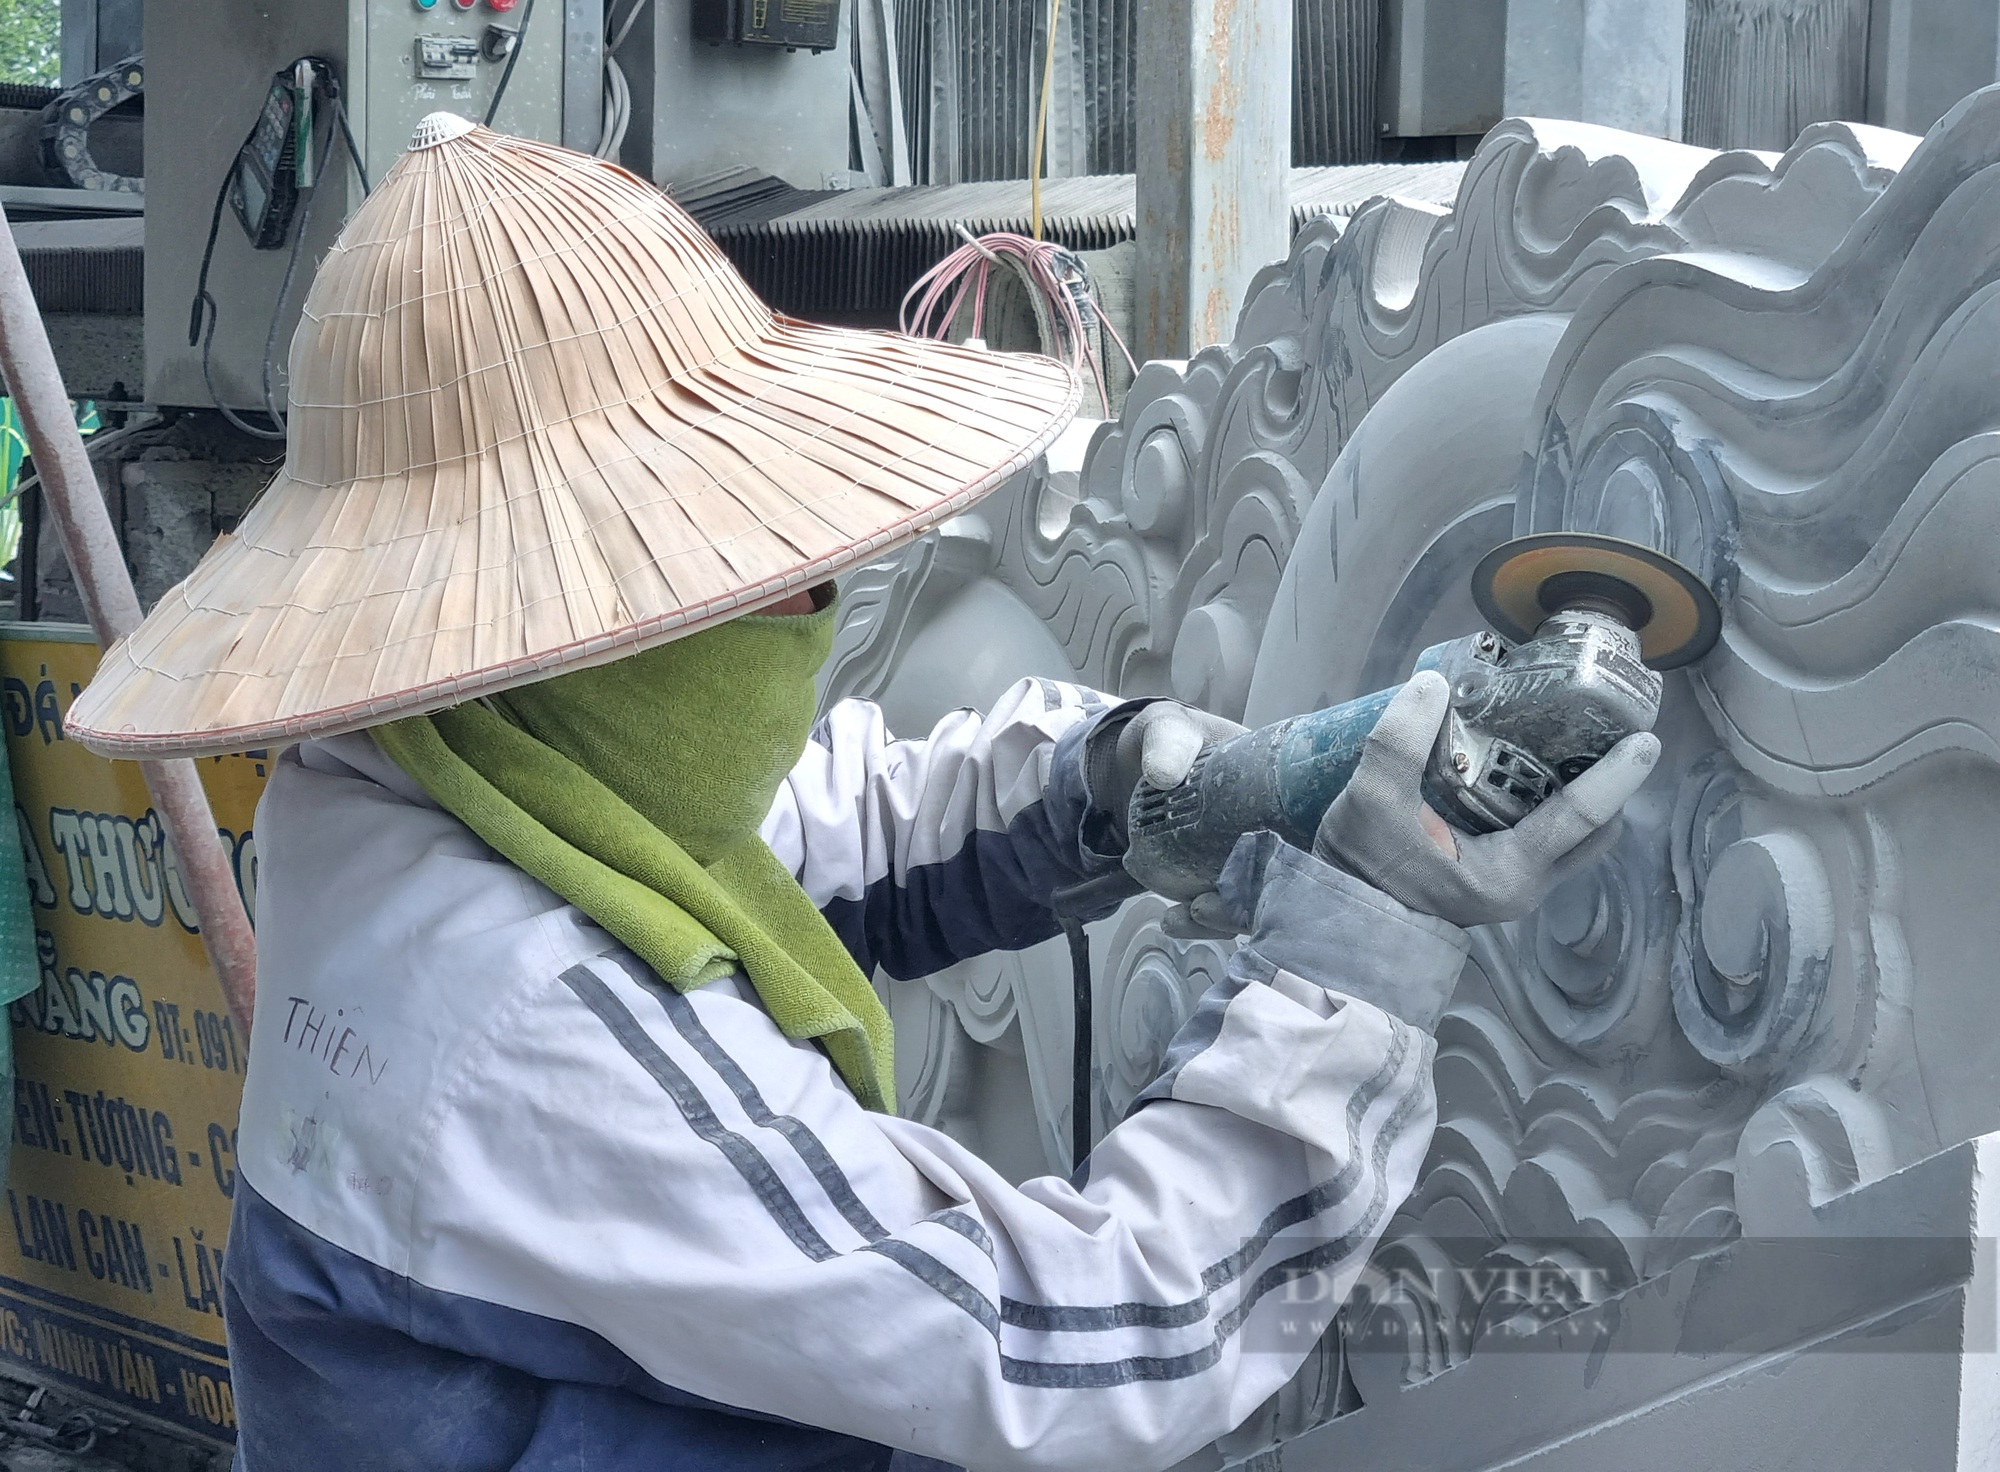 Ninh Bình: Cận cảnh nghề chế tác đá mỹ nghệ ở ngoài trời gần 40 độ C - Ảnh 5.